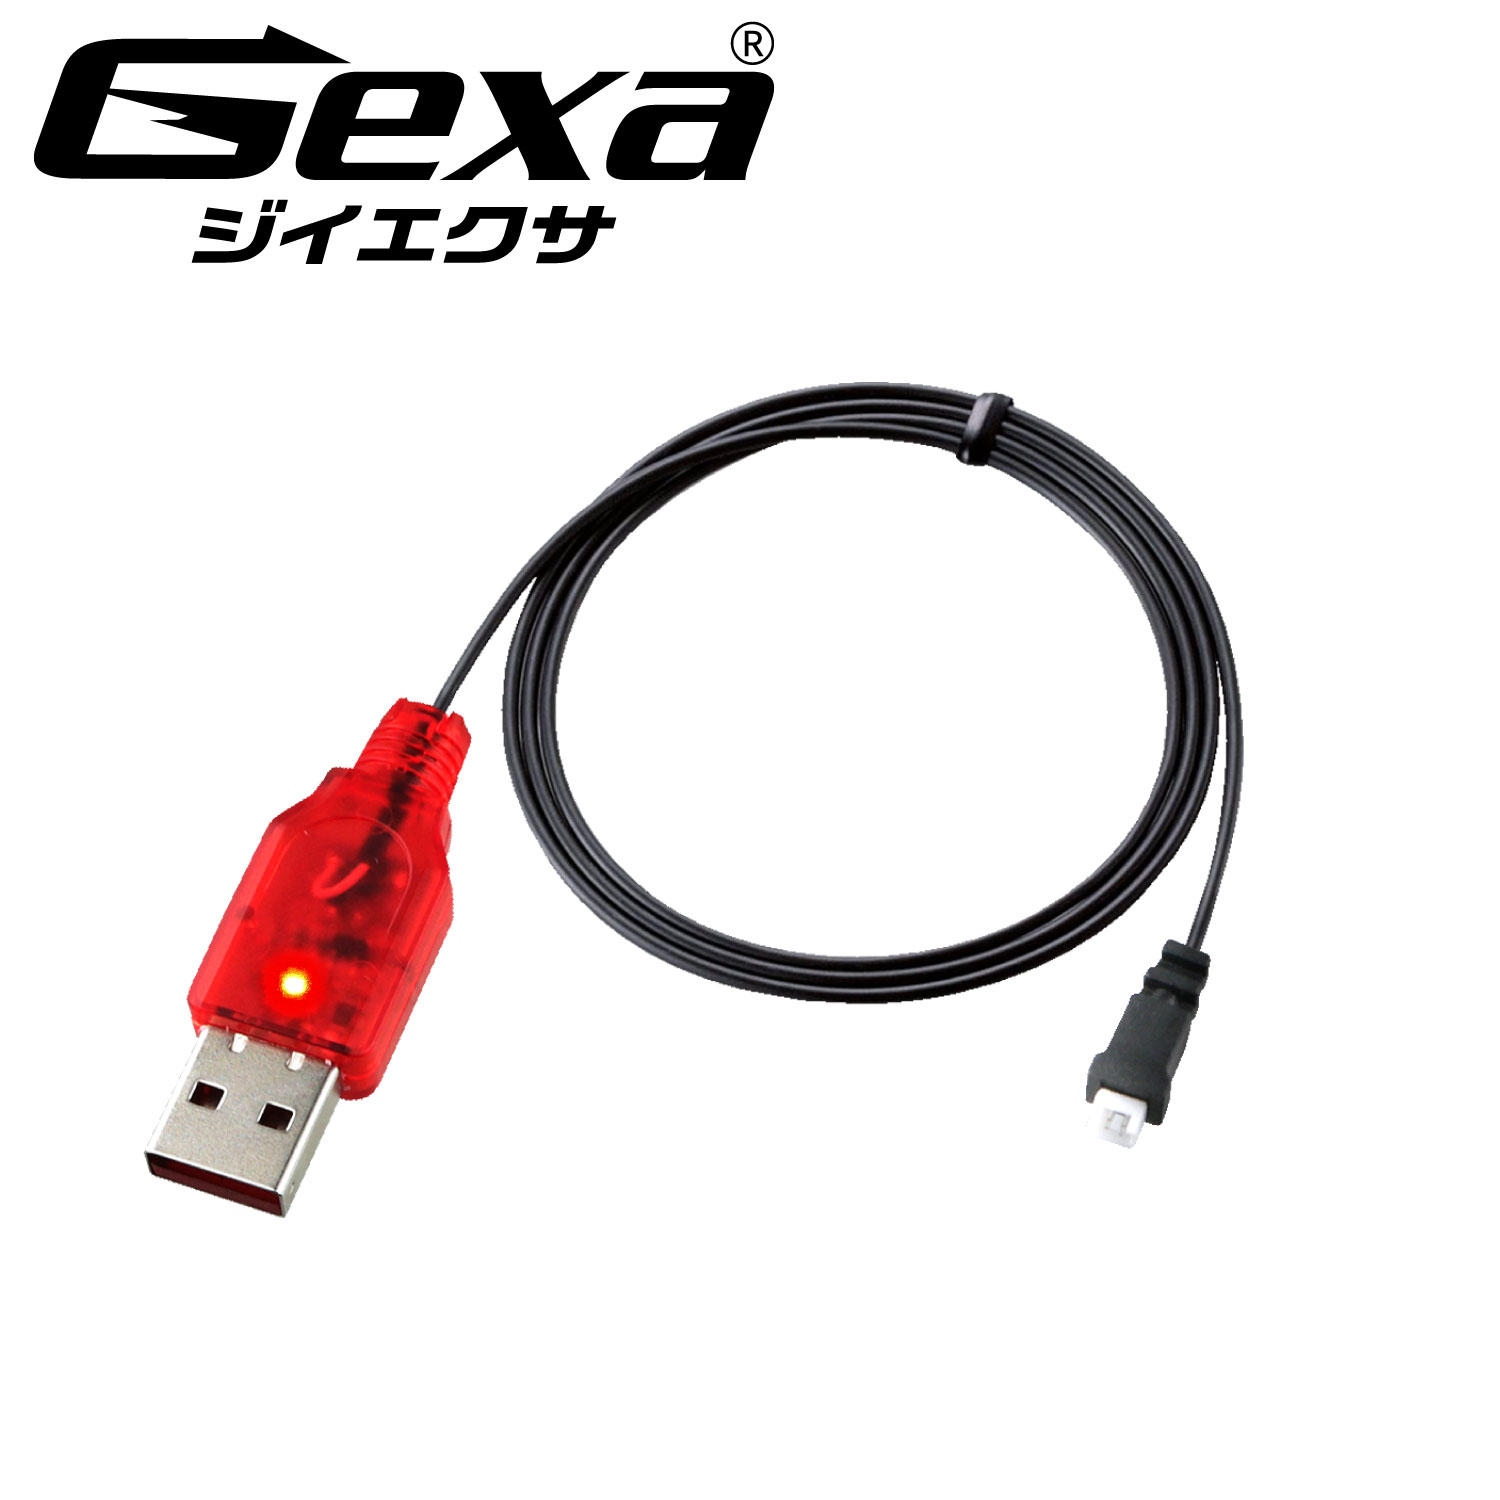 楽天アルバクラブリチウムポリマー 充電器 充電状態ランプ 電流逆流防止 リポ バッテリー GA-029R ジイエクサ（Gexa） コネクタの極性をご確認ください